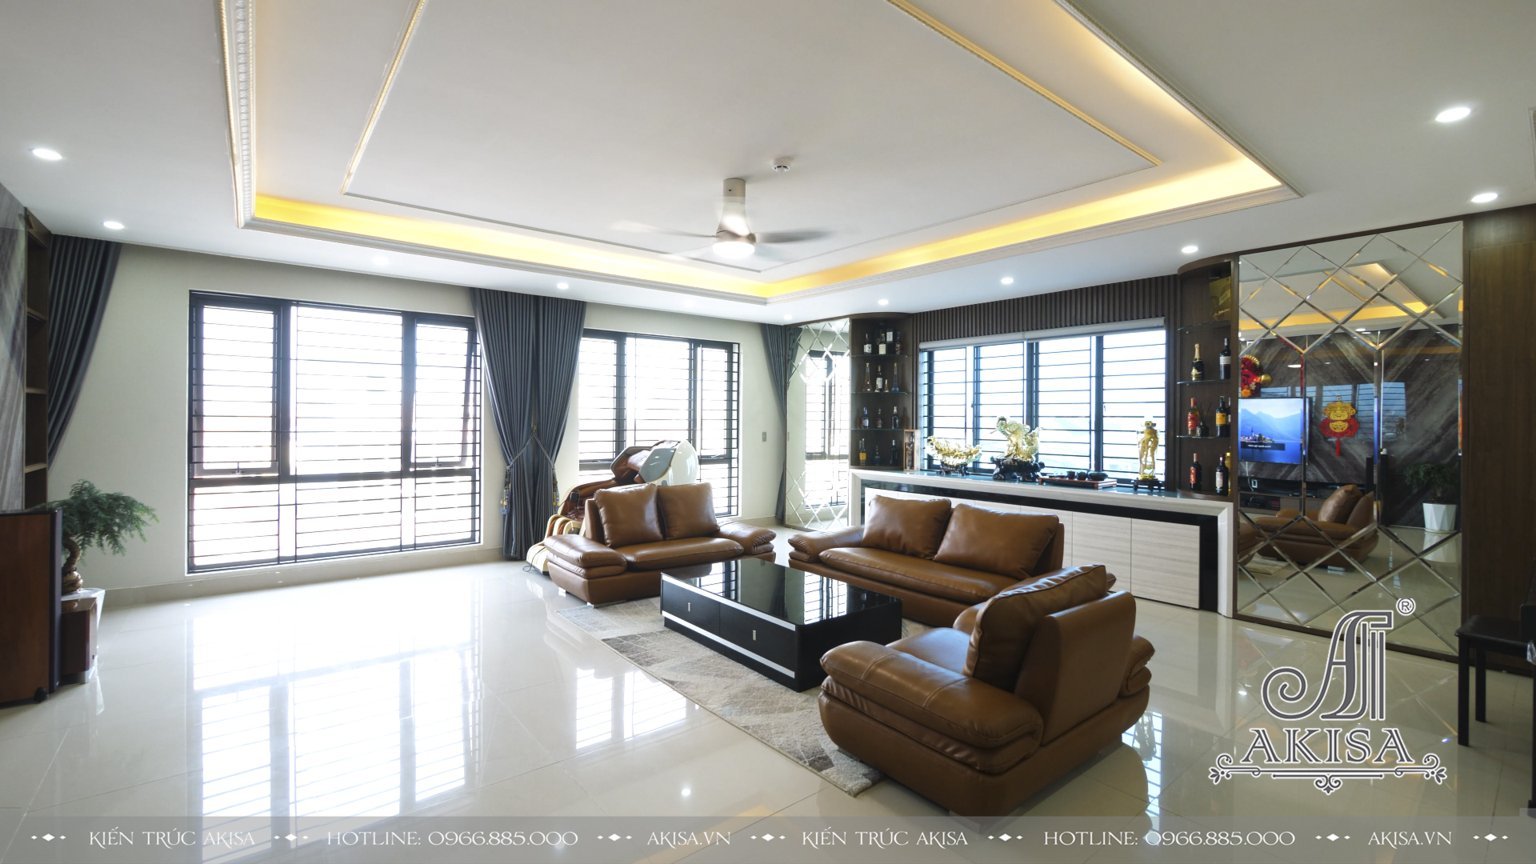 Hoàn thiện nội thất nhà phố phong cách hiện đại (CĐT: ông Hoàng - Nghệ An) TC62031-NT